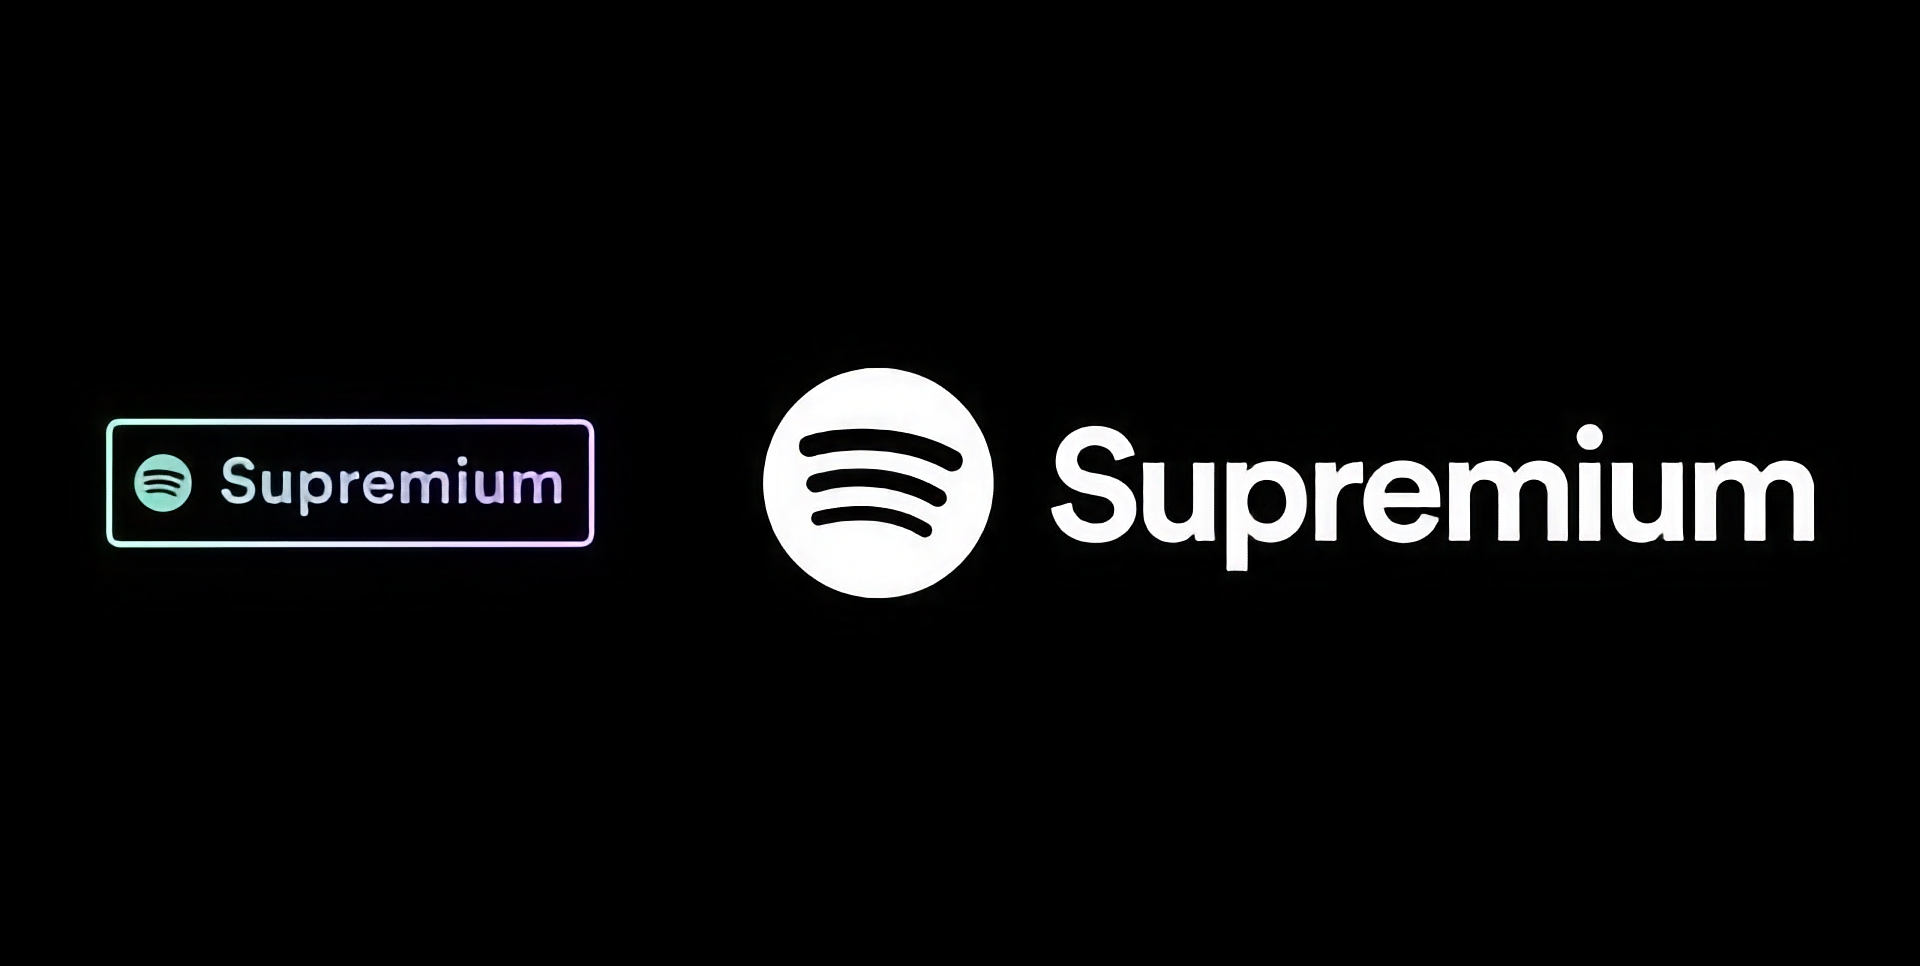 Spotify si sta preparando a rilasciare un piano Supremium con supporto audio Lossless e un prezzo di 19 dollari al mese